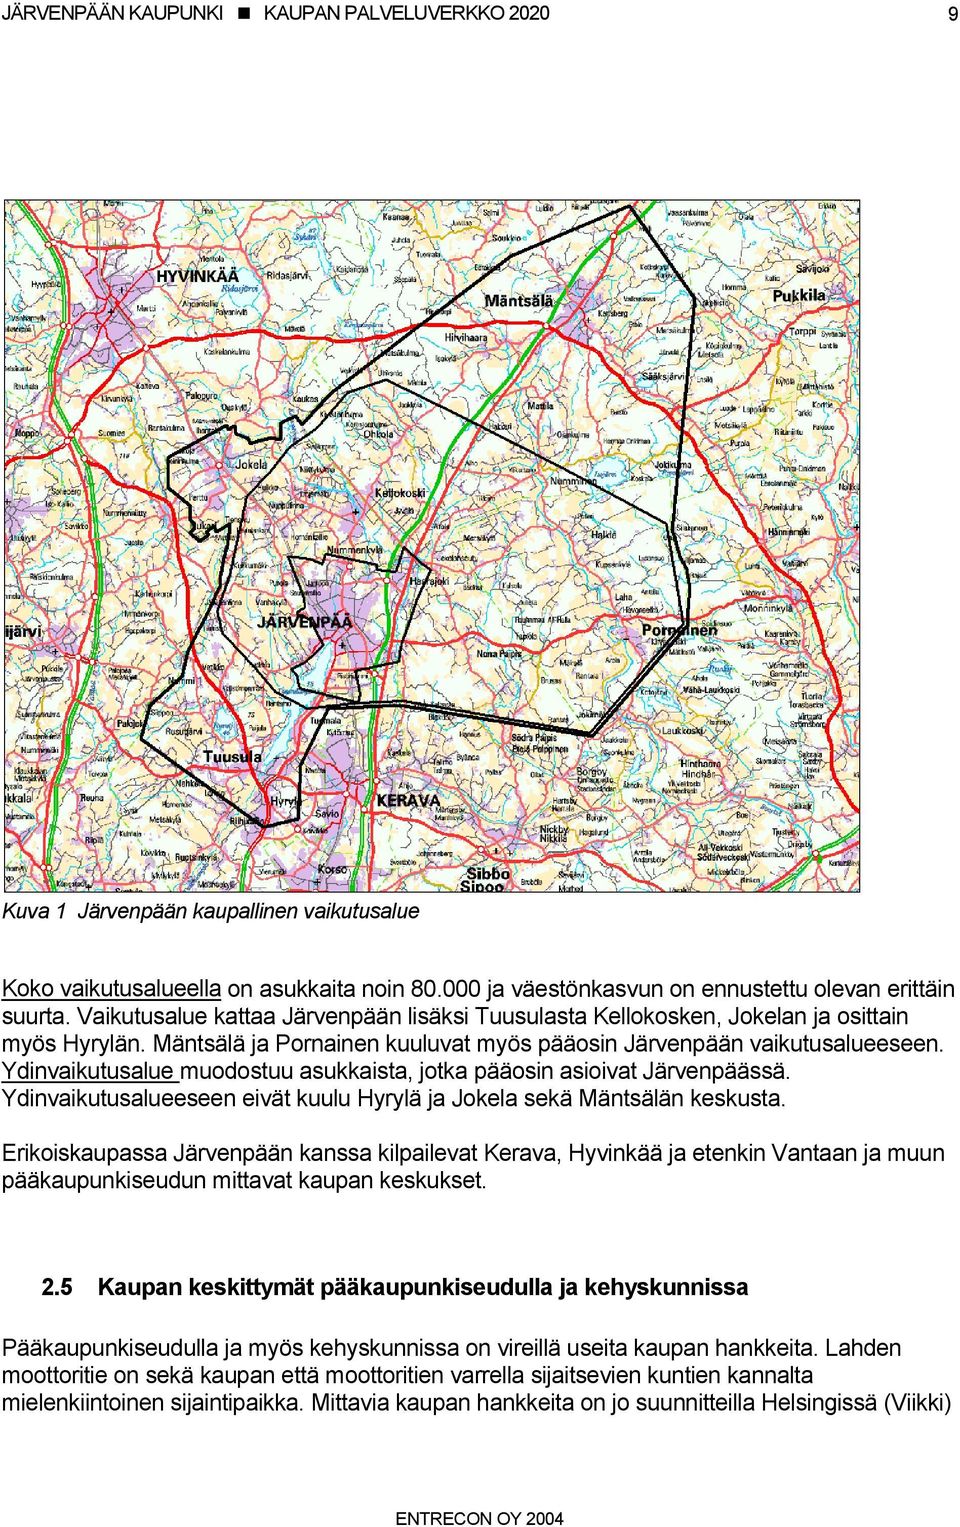 Ydinvaikutusalue muodostuu asukkaista, jotka pääosin asioivat Järvenpäässä. Ydinvaikutusalueeseen eivät kuulu Hyrylä ja Jokela sekä Mäntsälän keskusta.